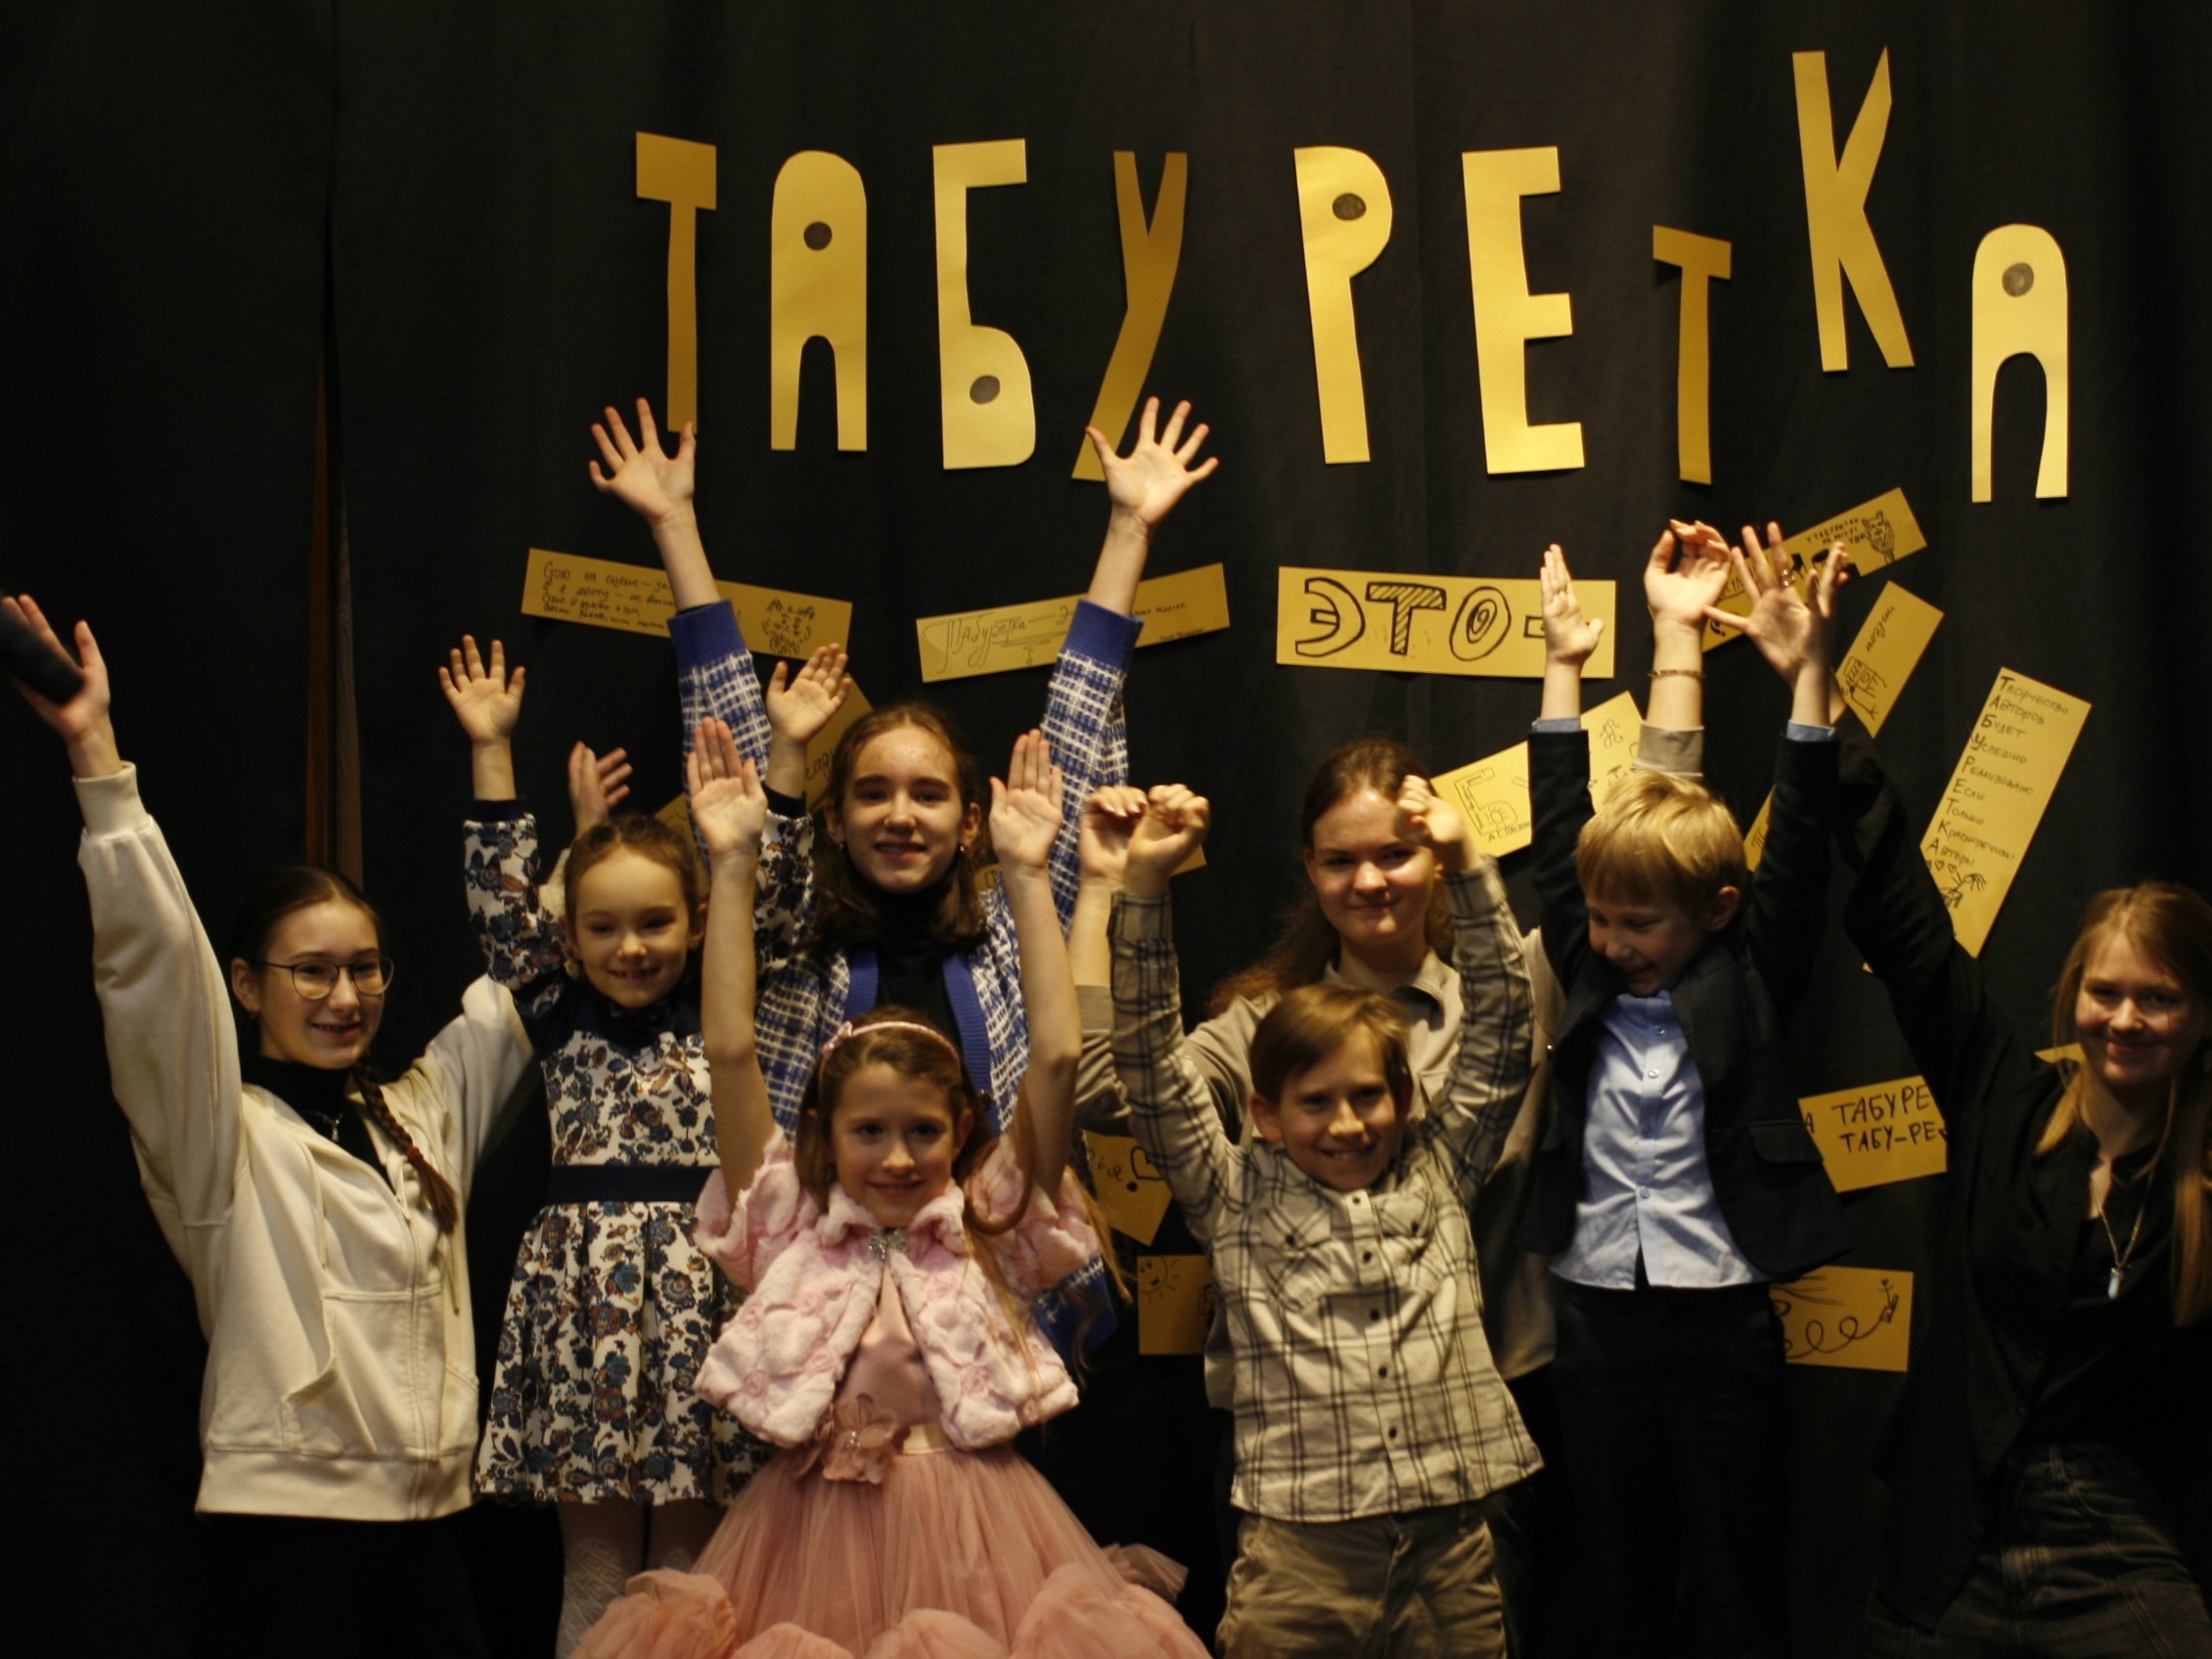 Псковские театральные коллективы приглашают принять участие во Всероссийском фестивале «Табуретка».